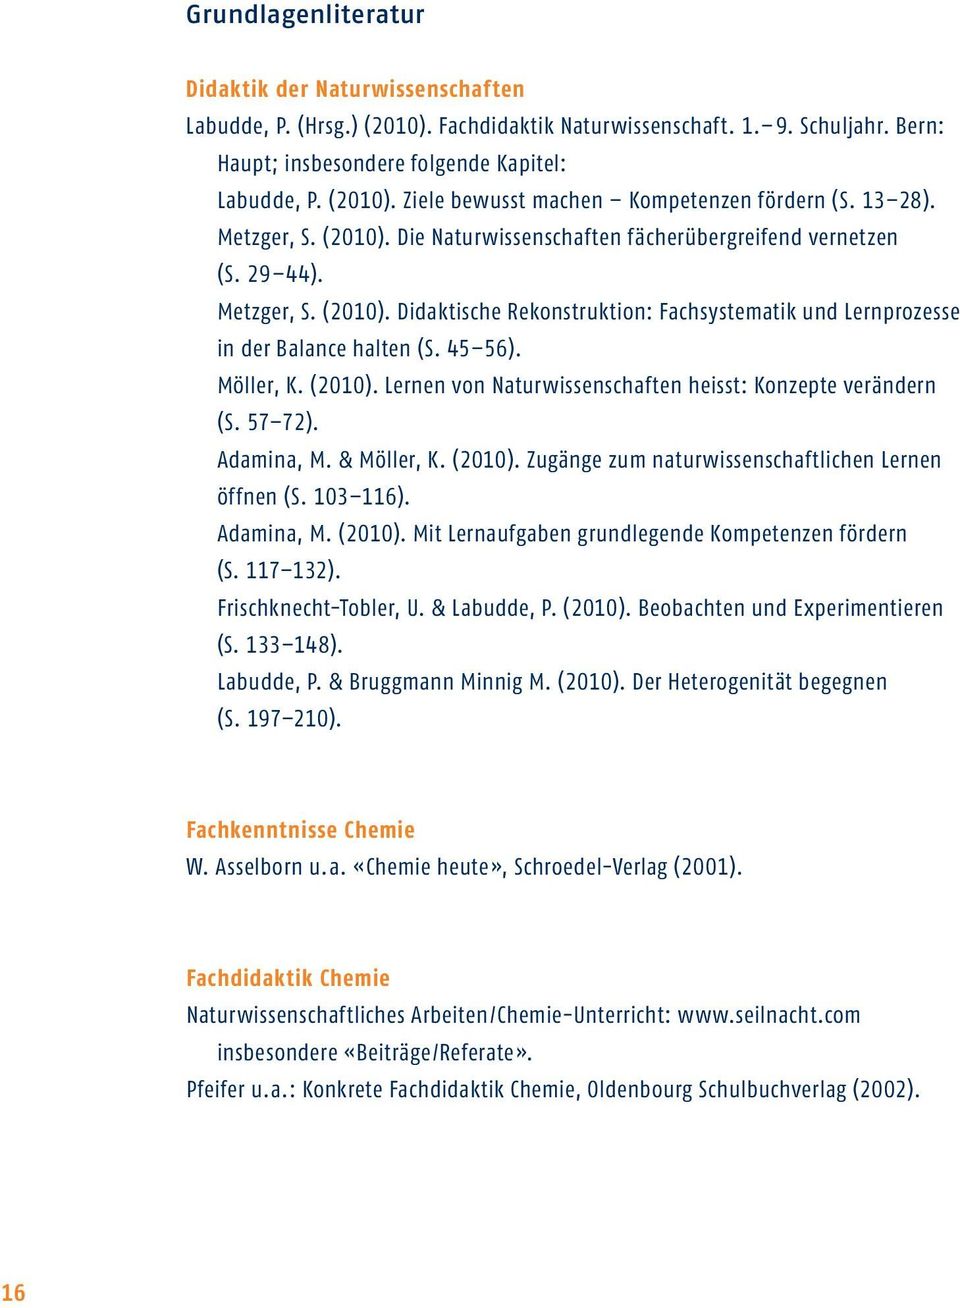 45 56). Möller, K. (2010). Lernen von Naturwissenschaften heisst: Konzepte verändern (S. 57 72). Adamina, M. & Möller, K. (2010). Zugänge zum naturwissenschaftlichen Lernen öffnen (S. 103 116).